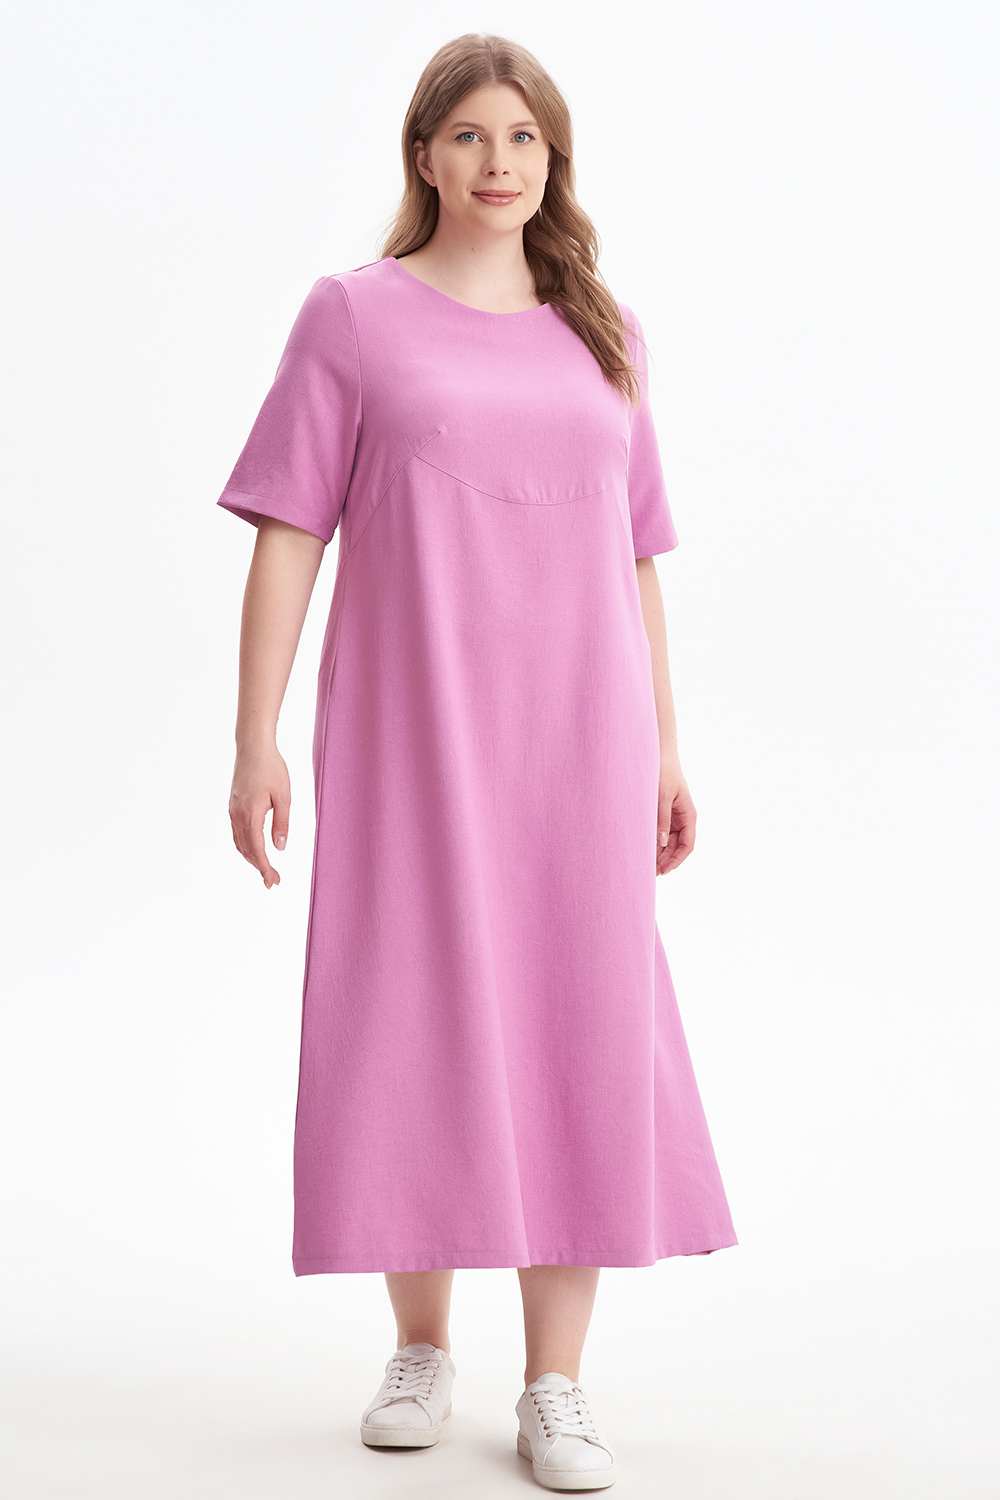 Платье женское OLSI 2305012 розовое 56 RU